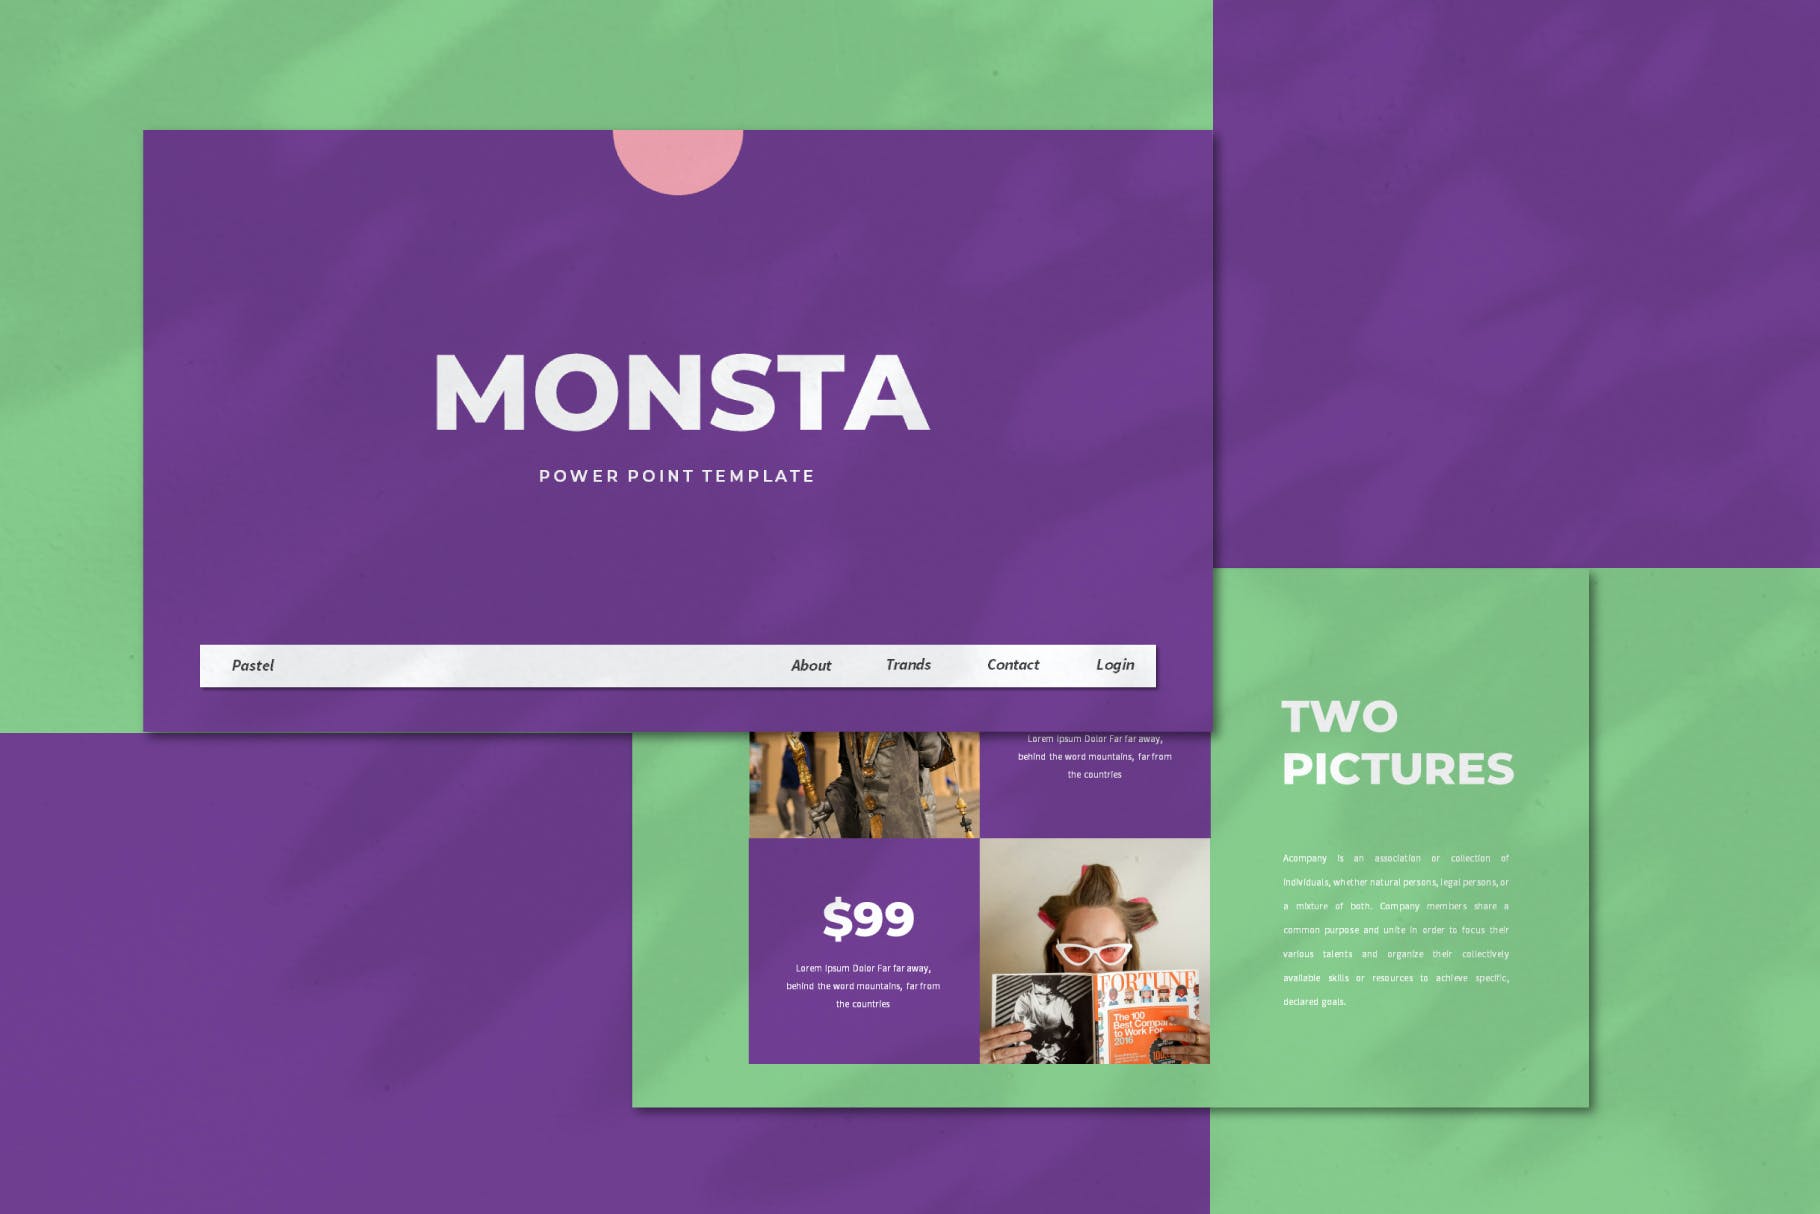 服装品牌推广创意多彩风格Powerpoint模板 Monsta – Powerpoint Template设计素材模板